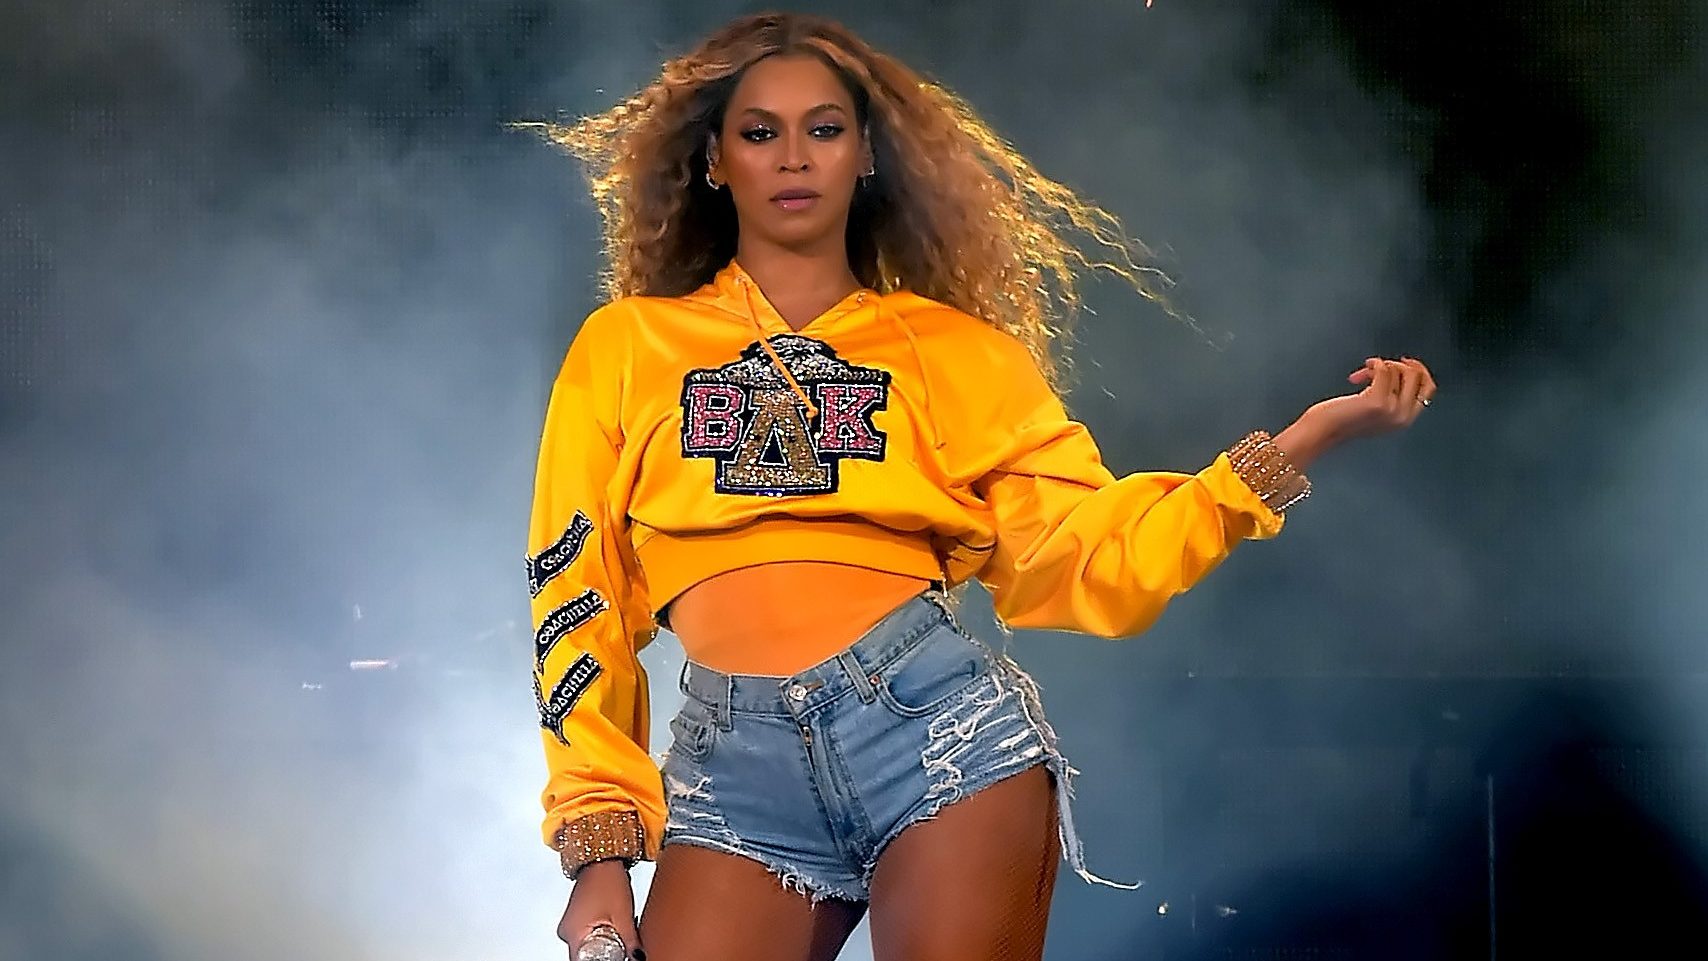 O Rei Leão: Álbum de Beyoncé tem Jay-Z, filha, Childish Gambino e mais